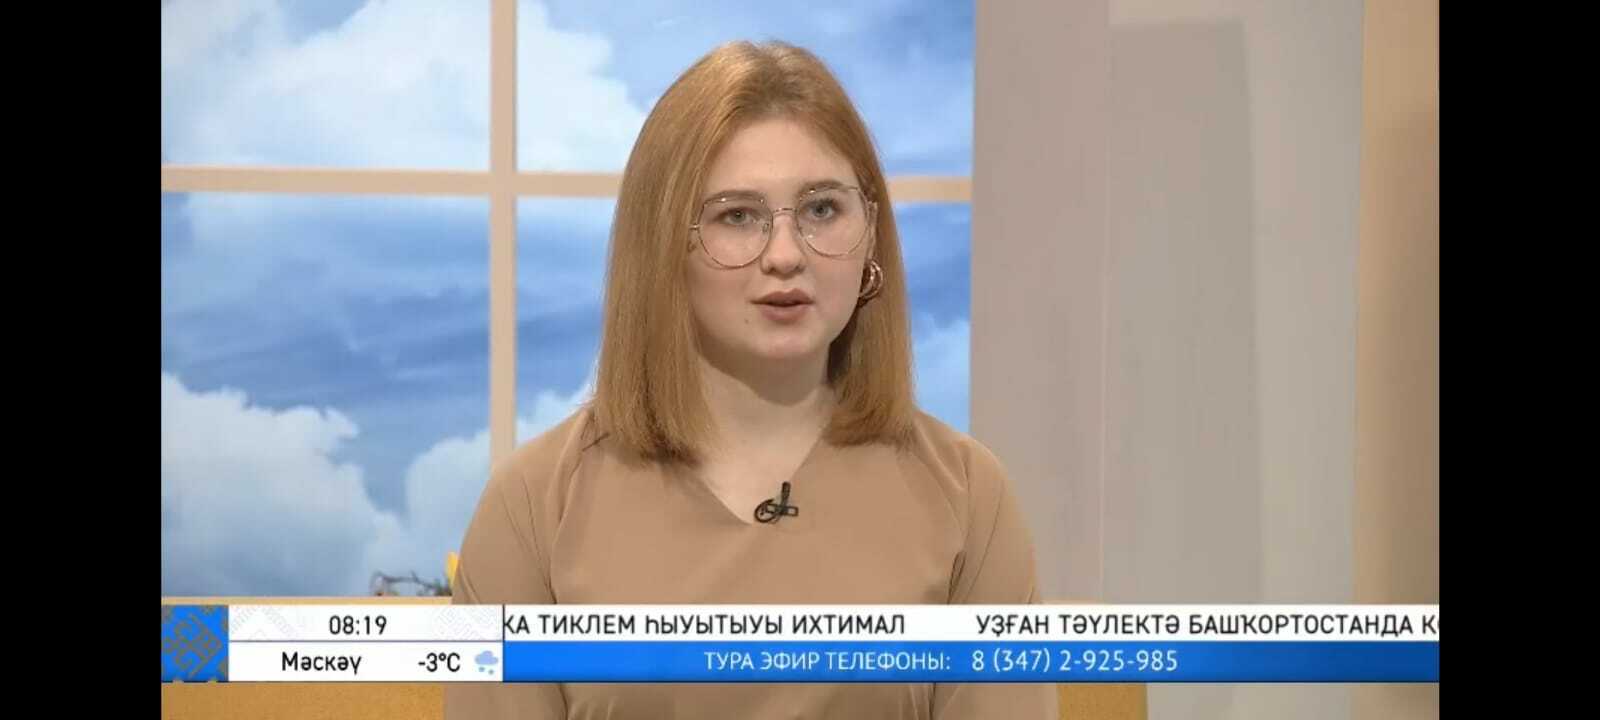 Диля Хазиакберова: о студенческой жизни, журналистике